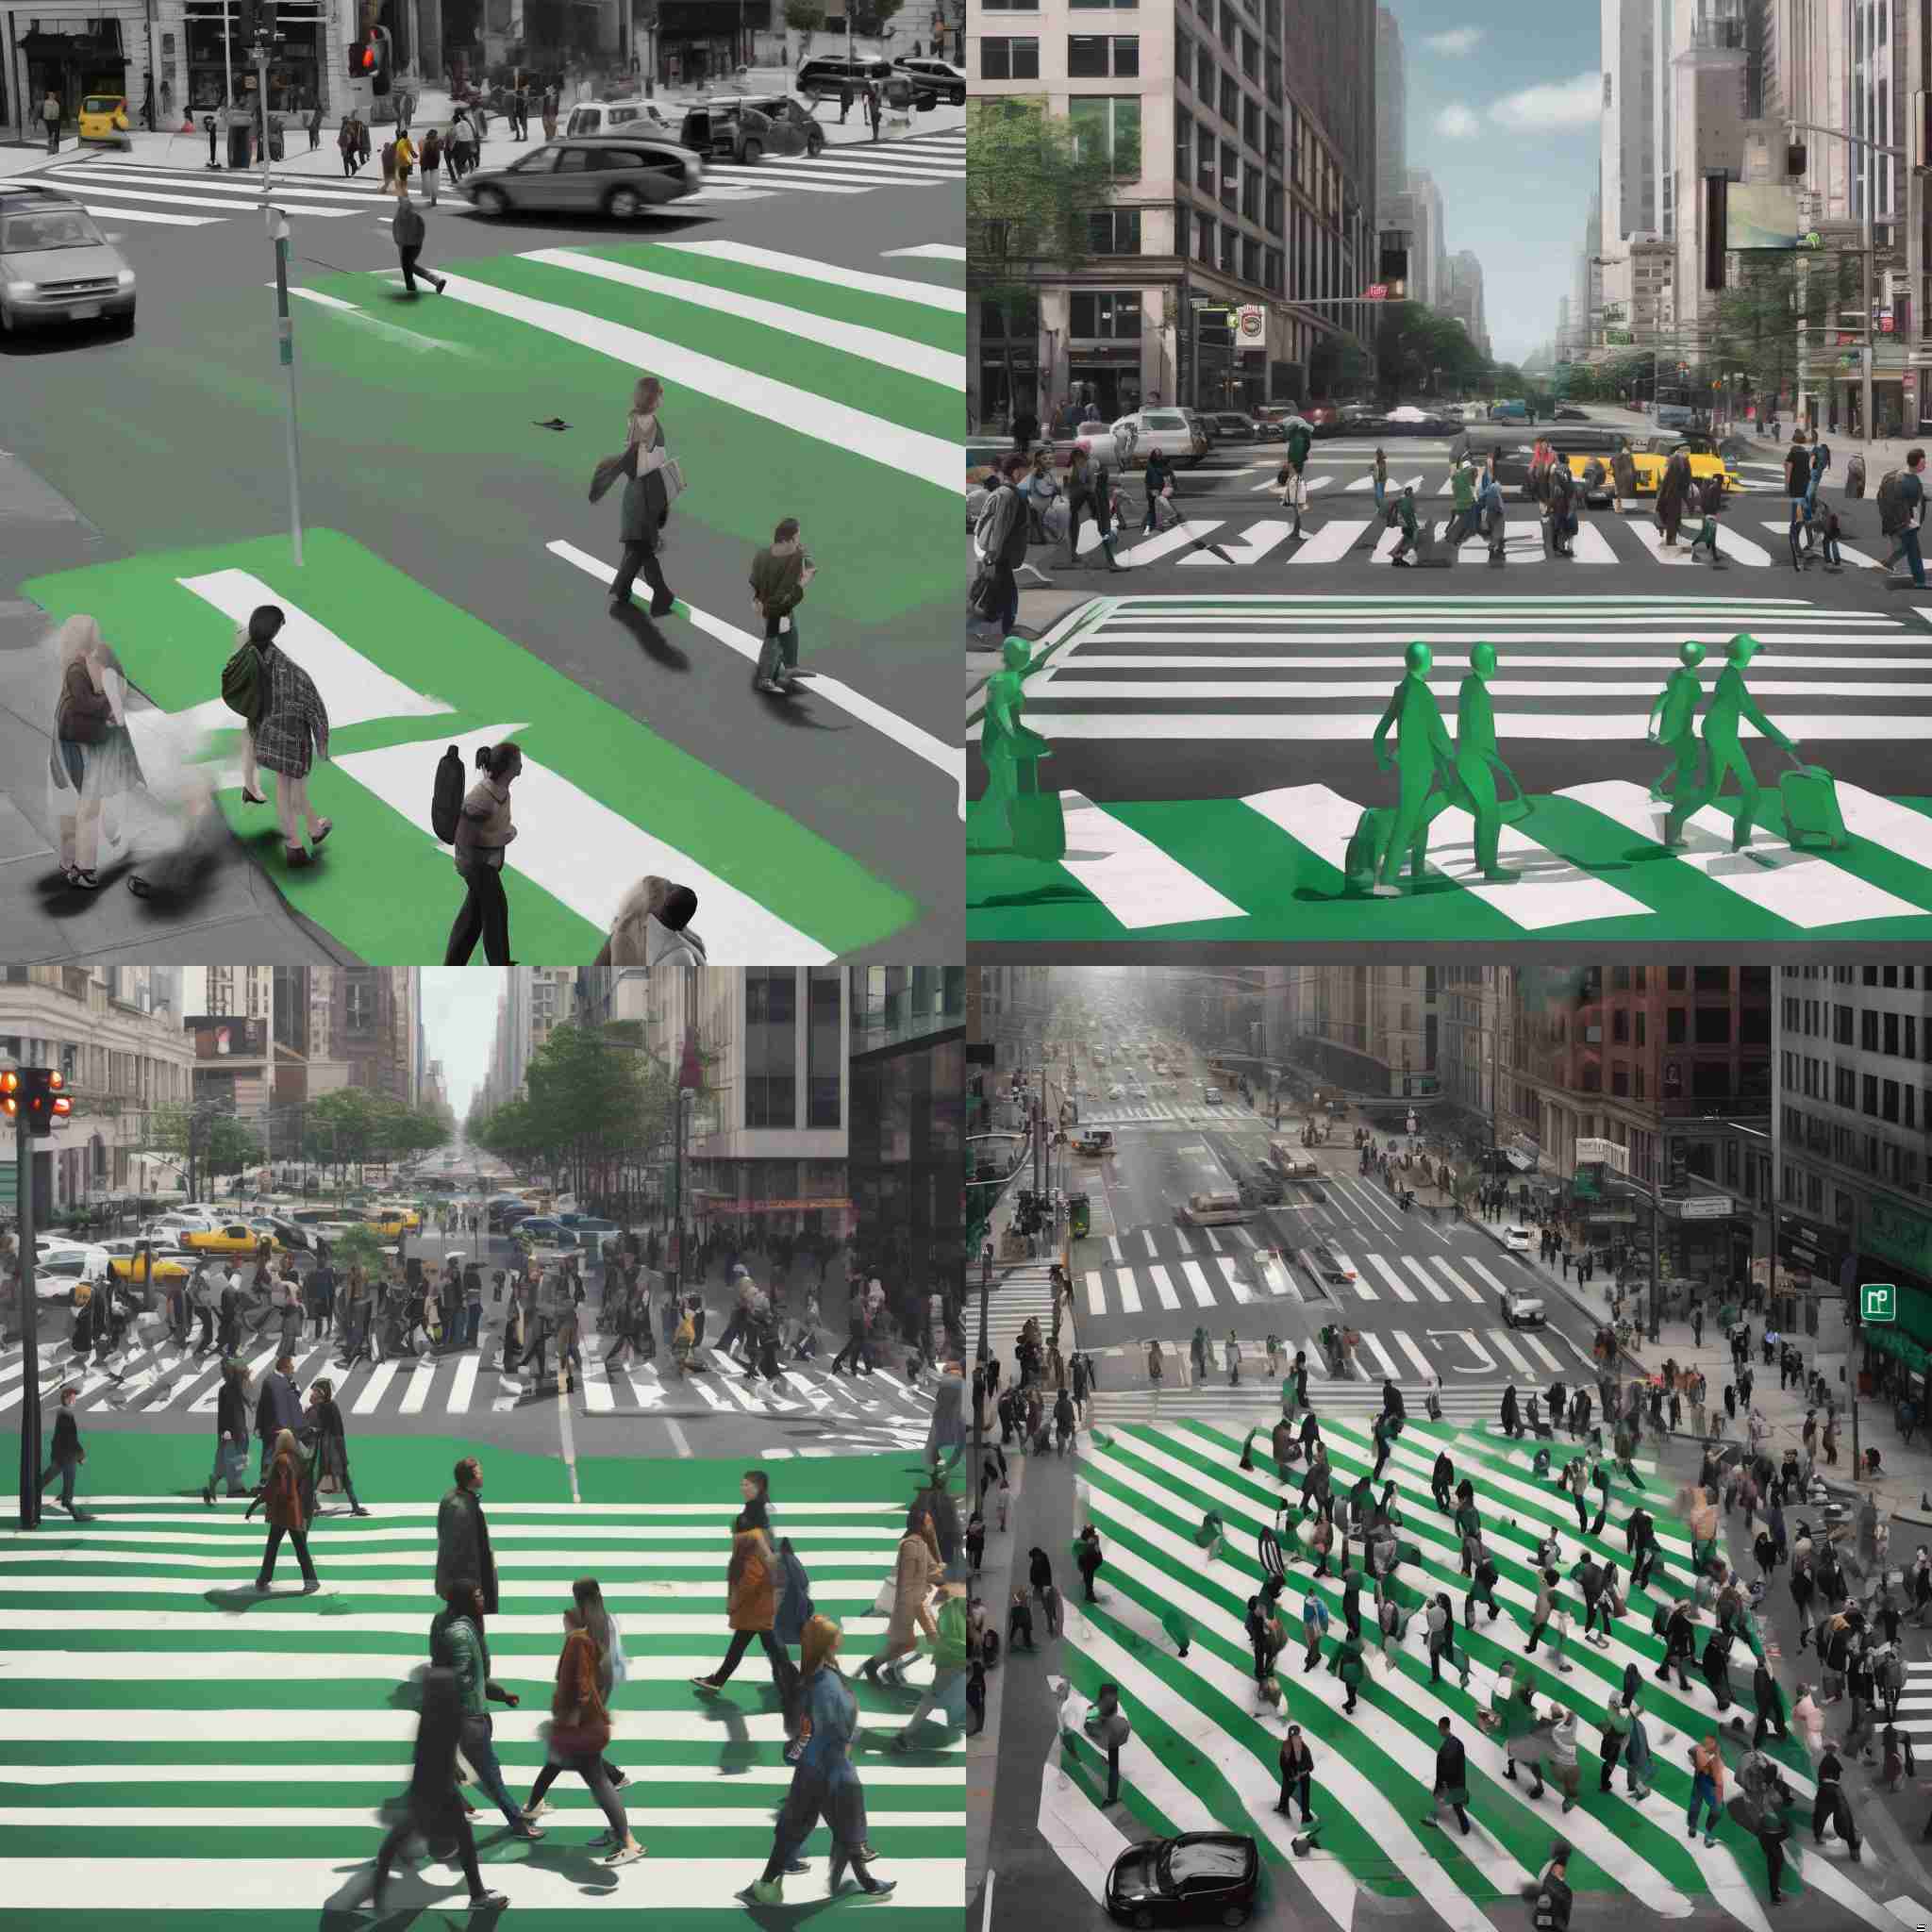 A crowded crosswalk with a green pedestrian signal